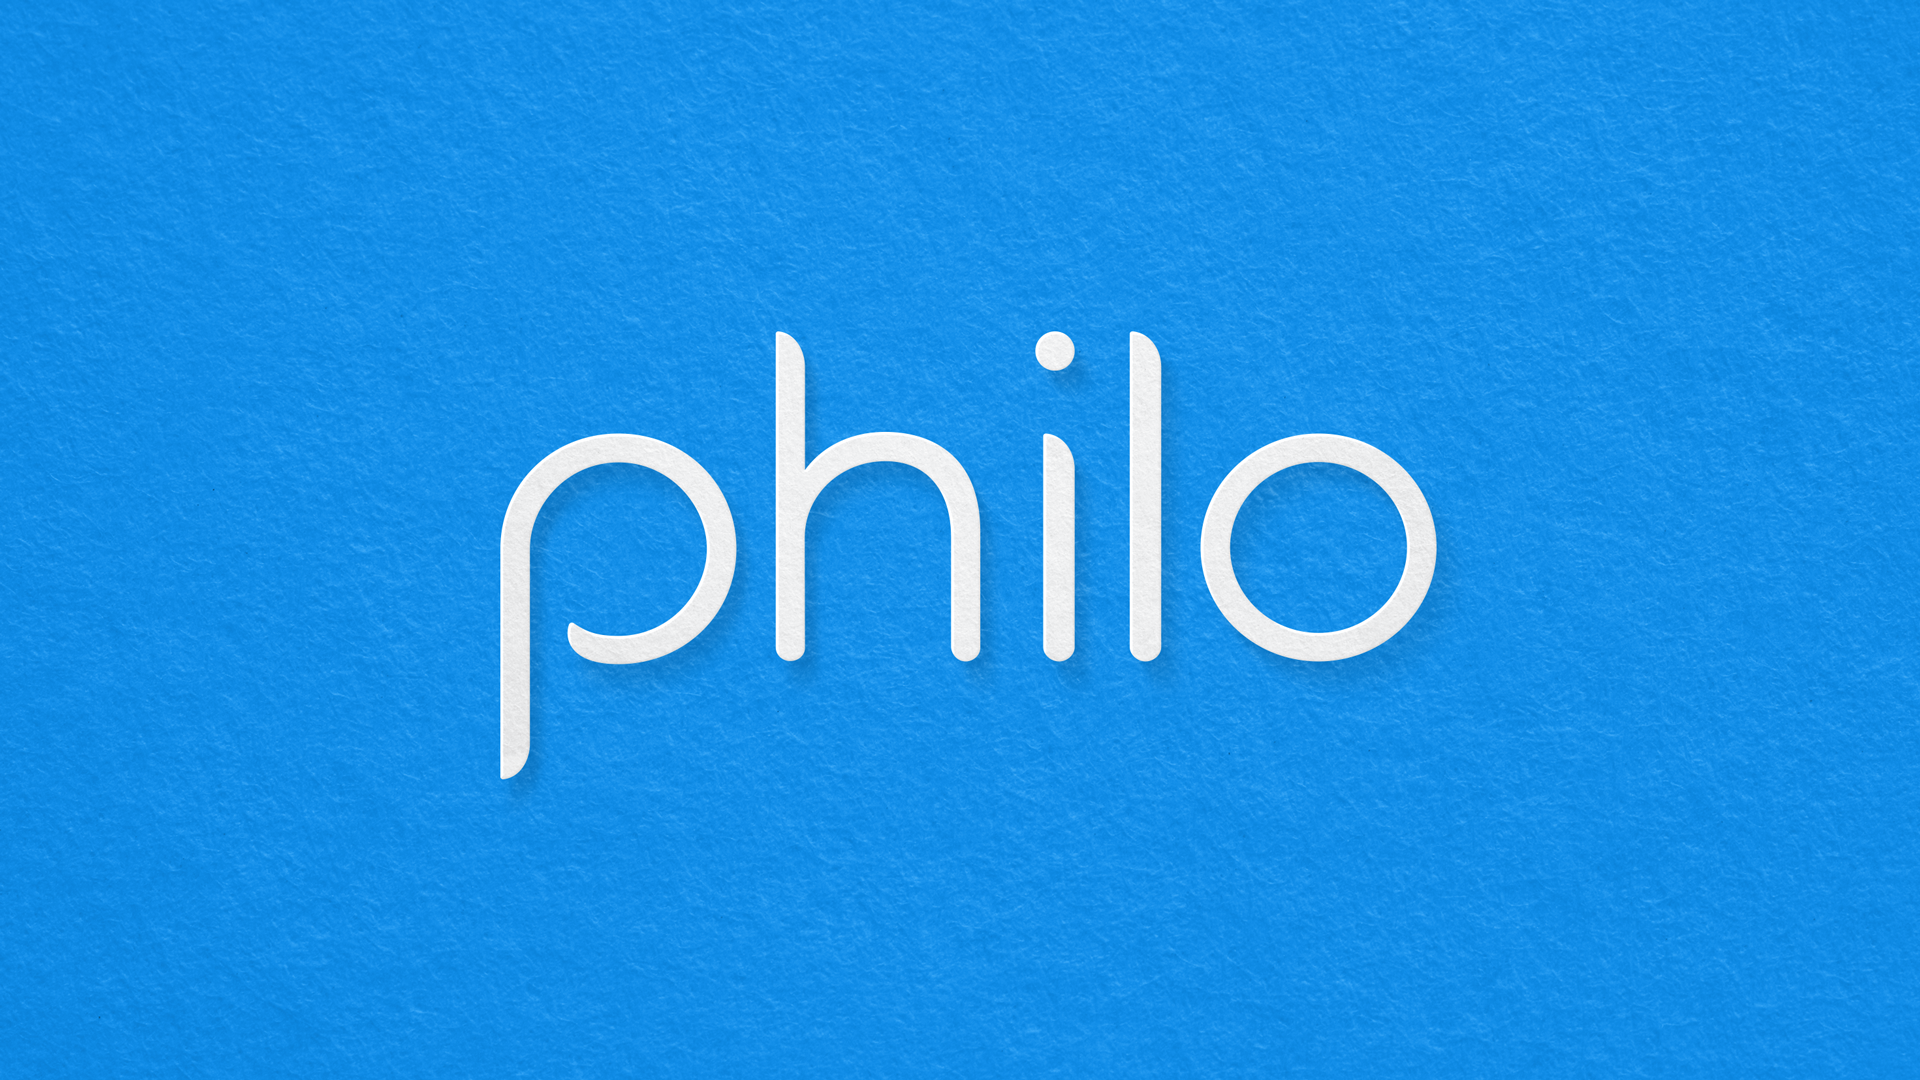 www.philo.com